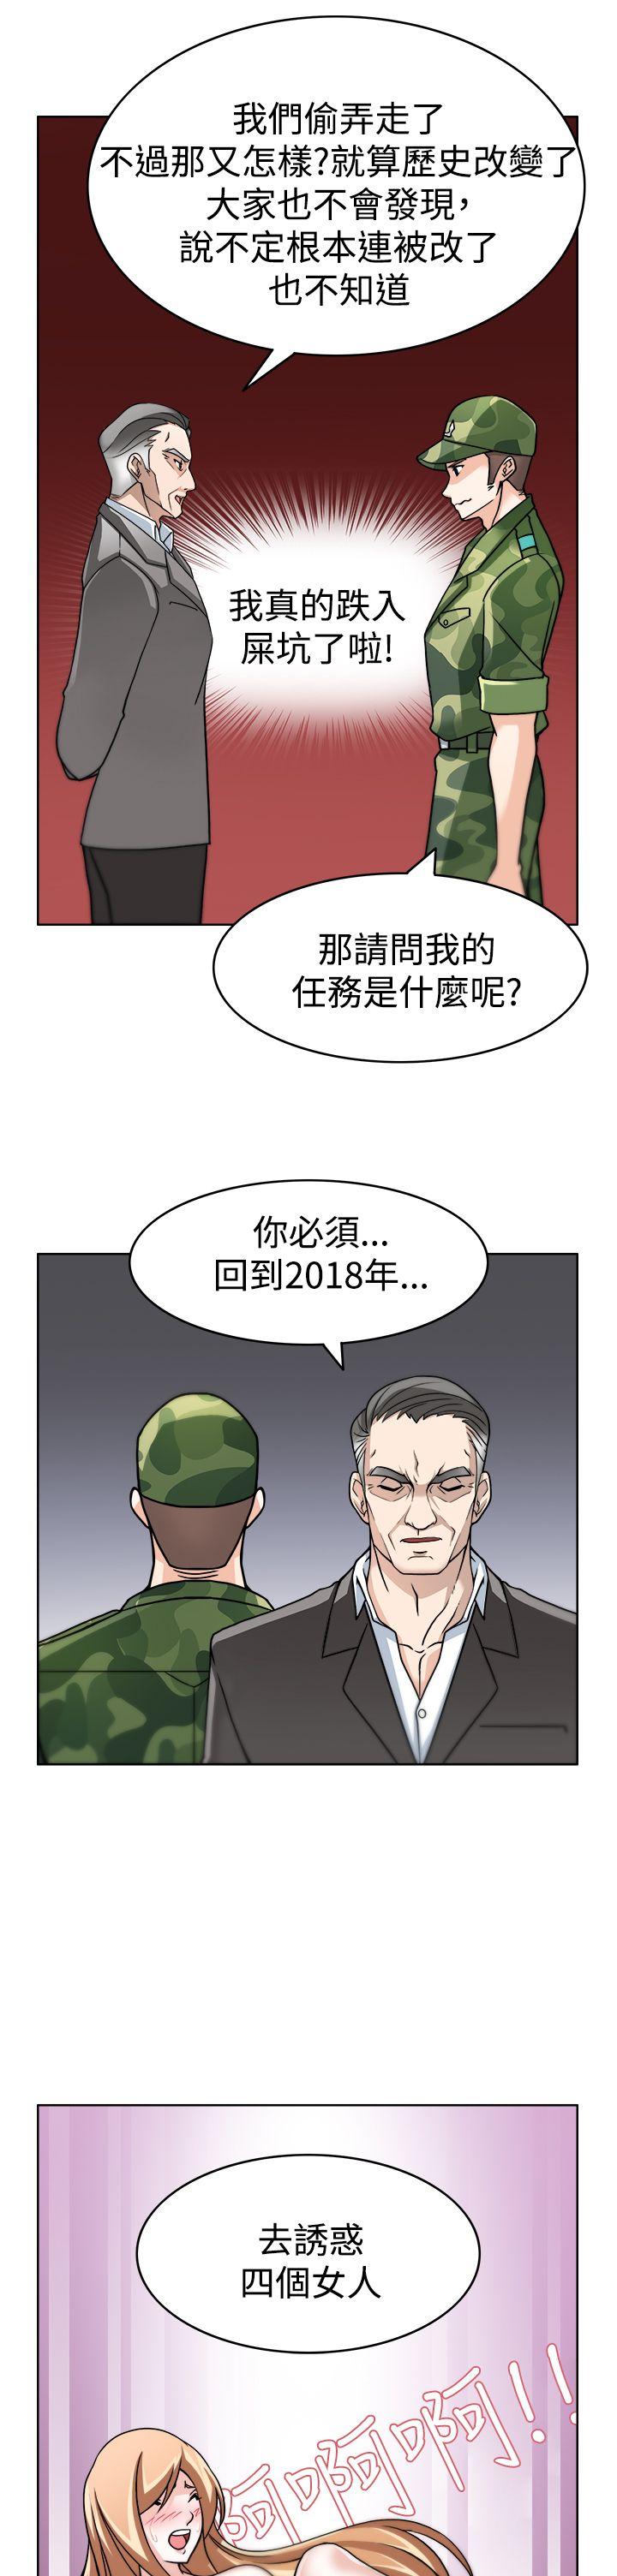 韩国污漫画 軍人的誘惑 第3话 17